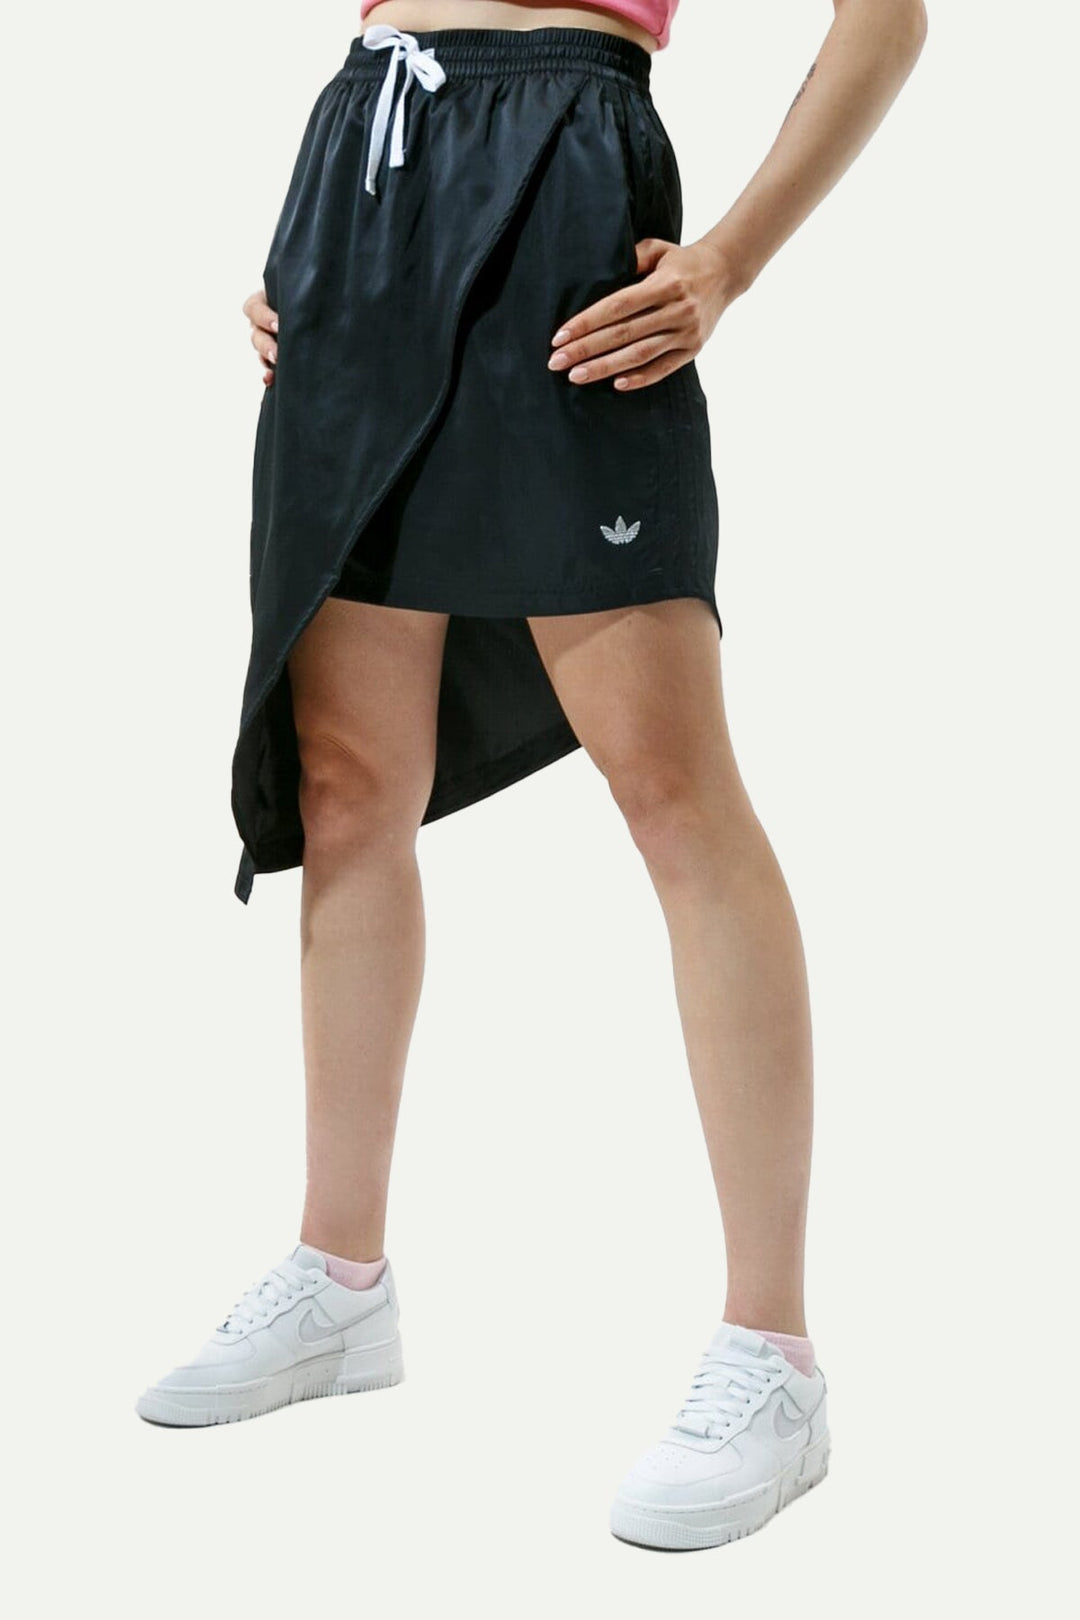 חצאית א-סימטרית Hazgrn בצבע שחור - Adidas